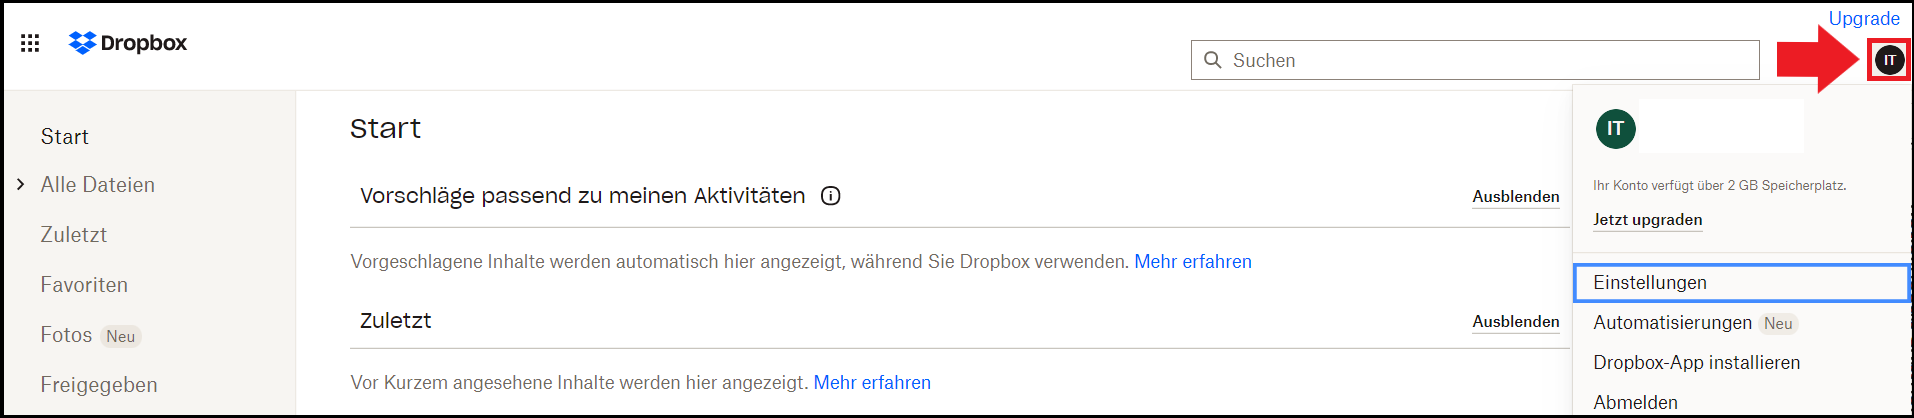 Die Dropbox-Kontoseite des Nutzerprofils